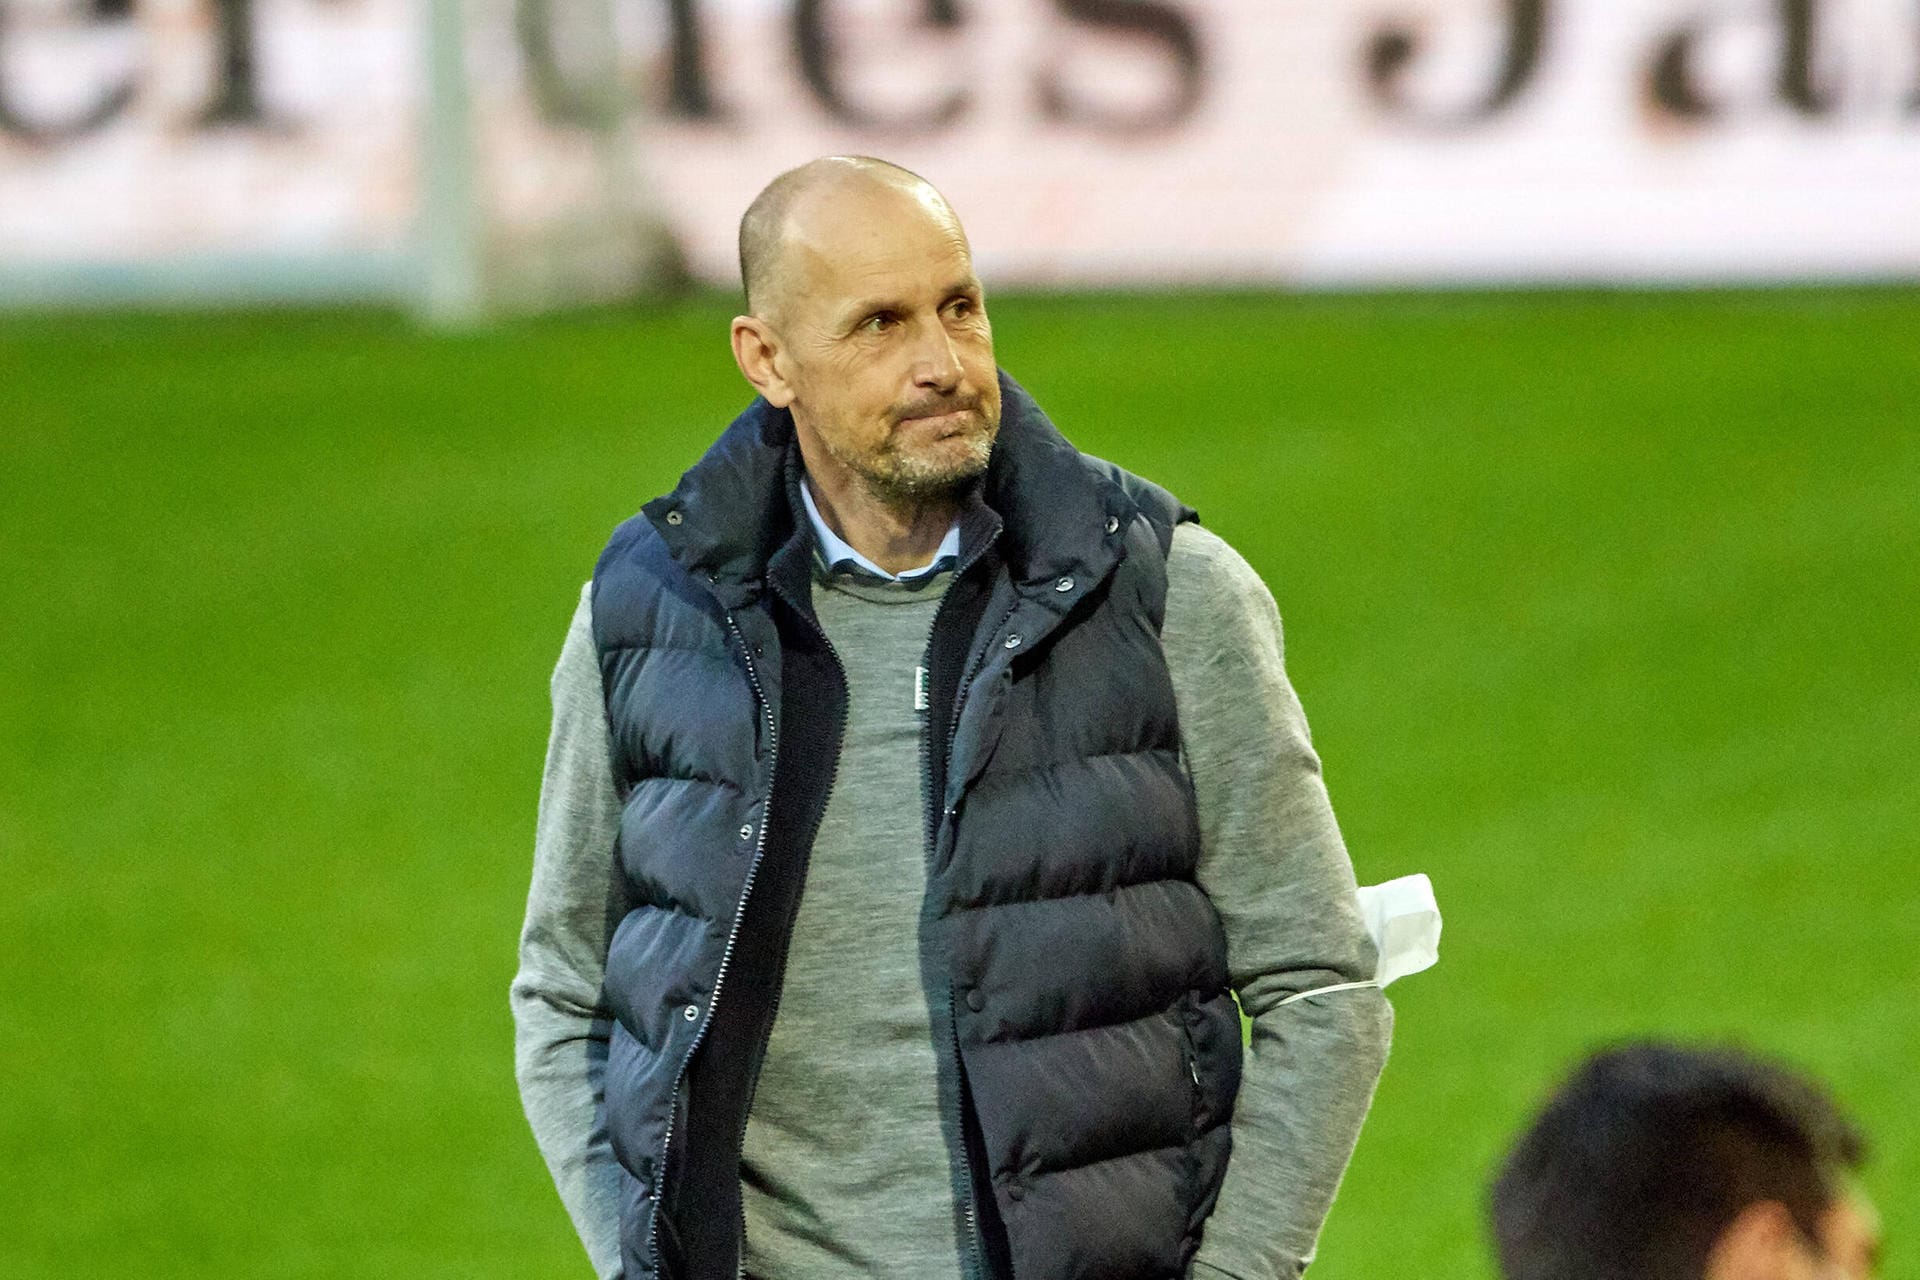 Heiko Herrlich: Der gebürtige Mannheimer war bis April 2021 Trainer des FC Augsburg, holte im Schnitt 1,07 Punkte. Zuvor coachte er Bayer Leverkusen in 64 Spielen. Seit seiner Anstellung bei den Schwaben ist herrlich ohne Engagement als Trainer.